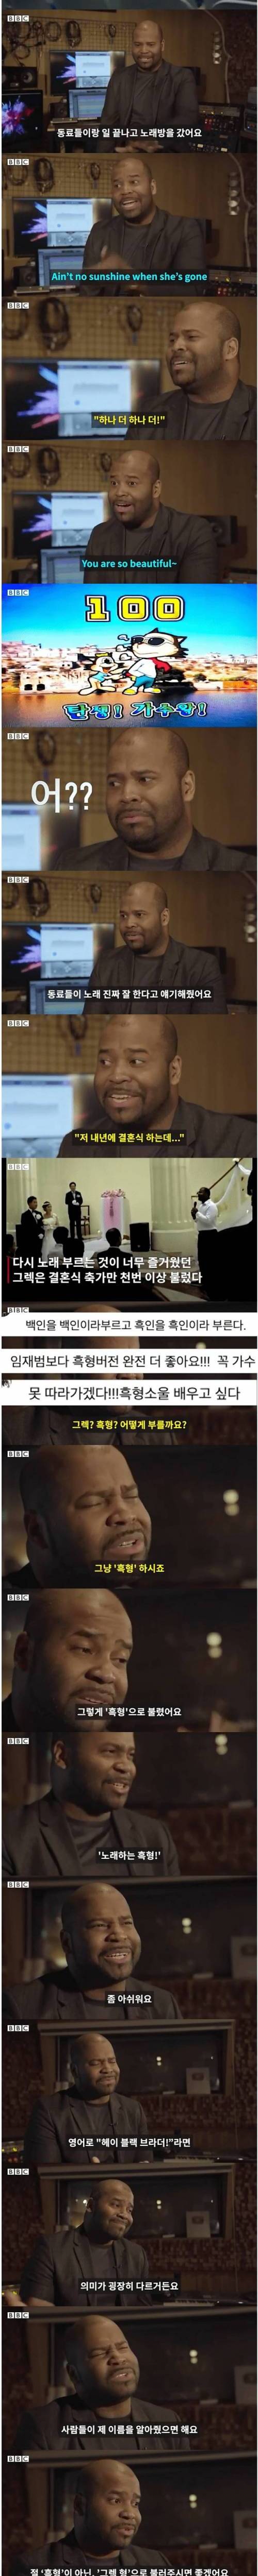 [스압] 미국 고등학교 선생님이 한국 가요를 부르게 된 이유.jpg